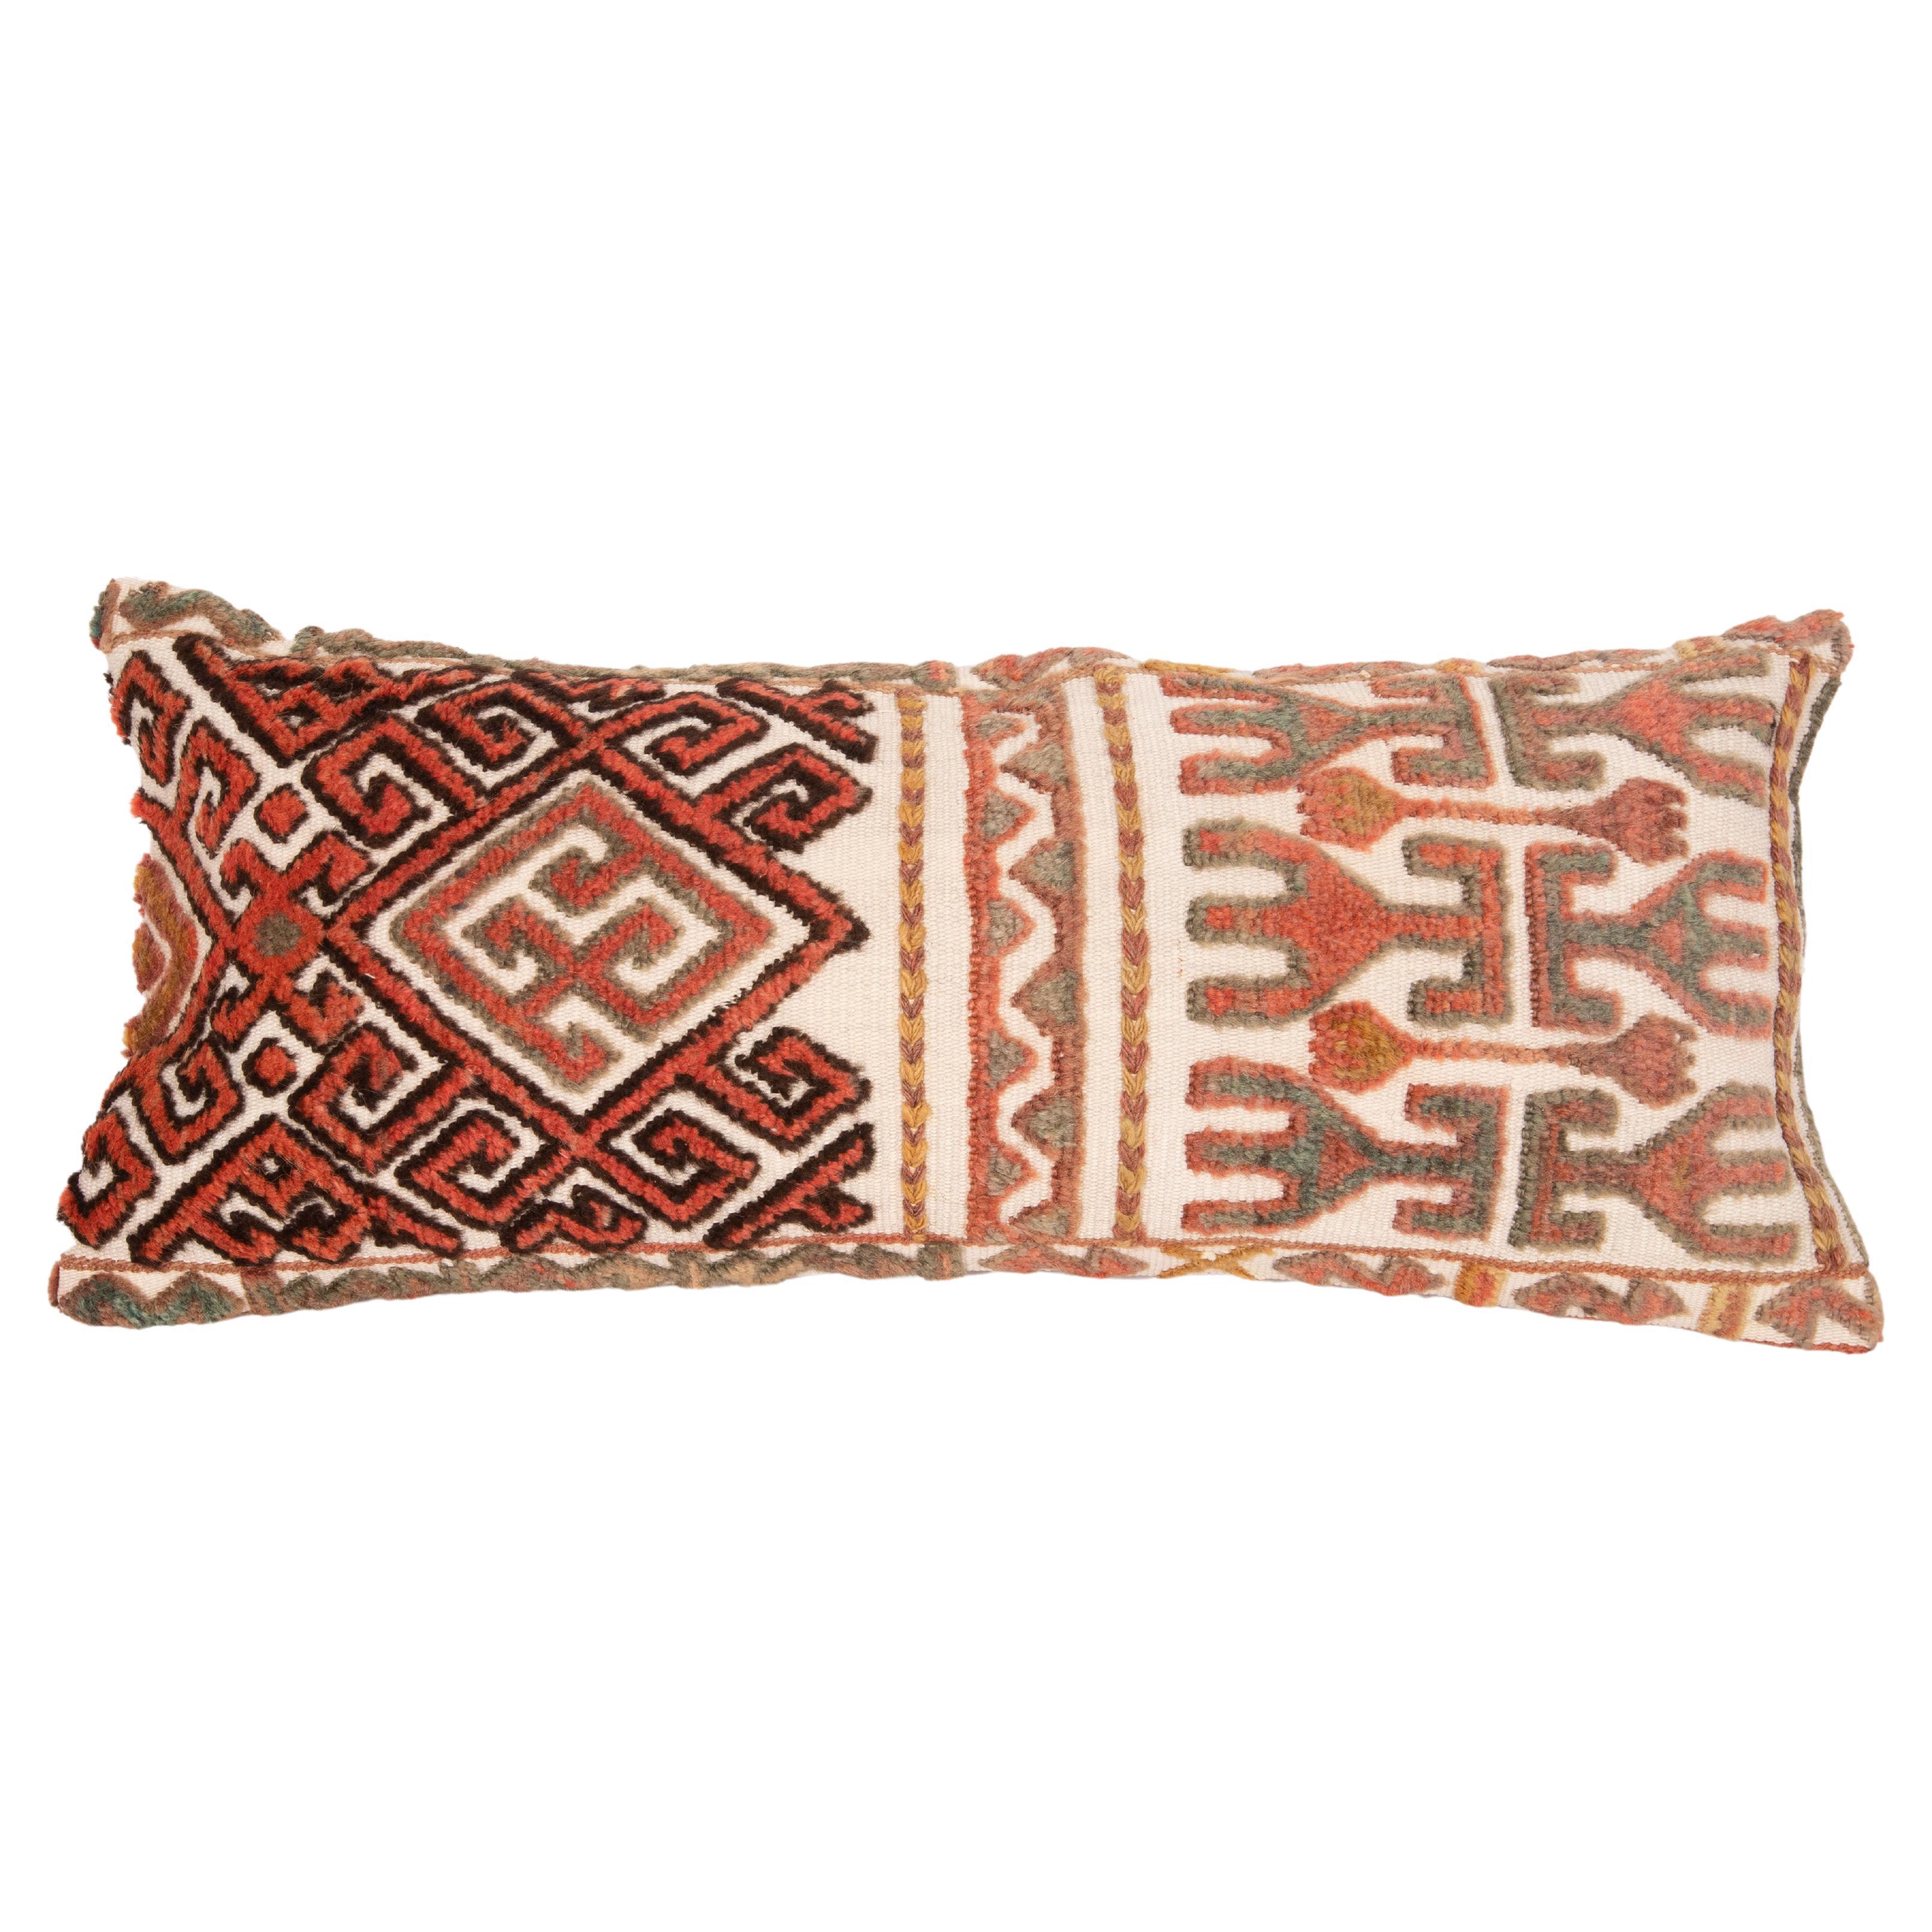 Pillow Cover Made from an Early 20th C. Karakalpak Tent Band, Uzbekistan